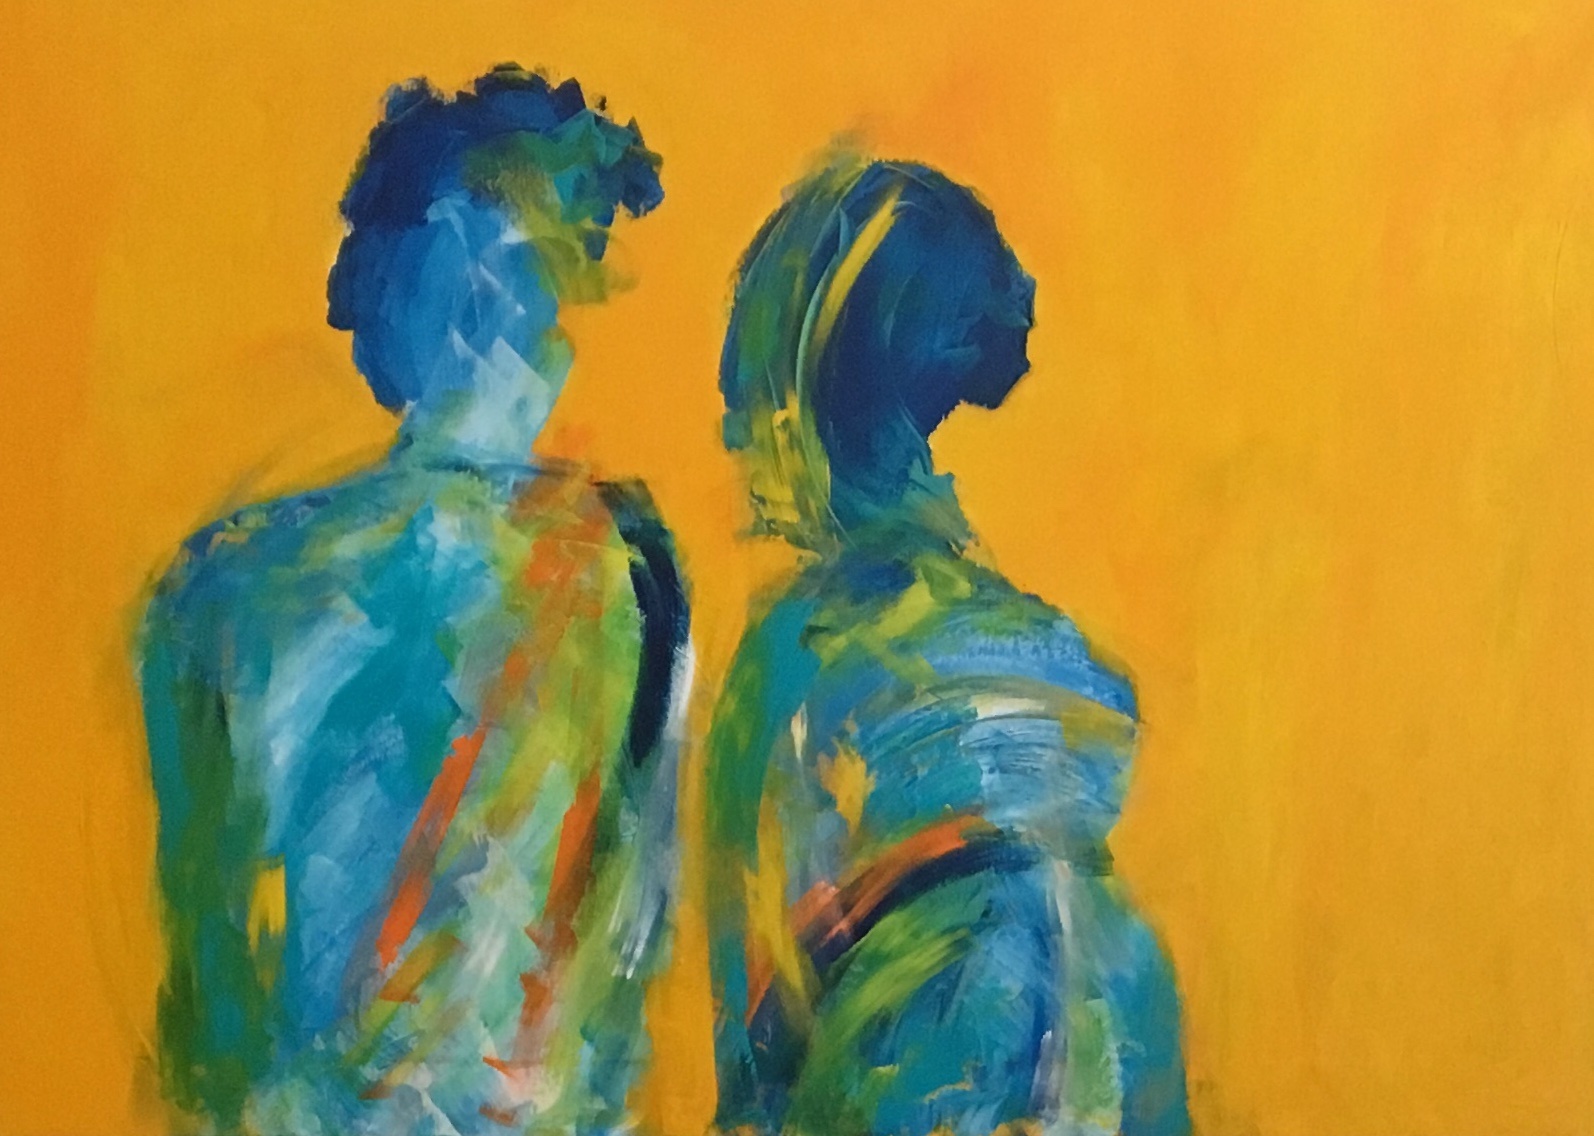 En mand og en kvinde står tæt sammen og betragter den gule verden rundt omkring sig.